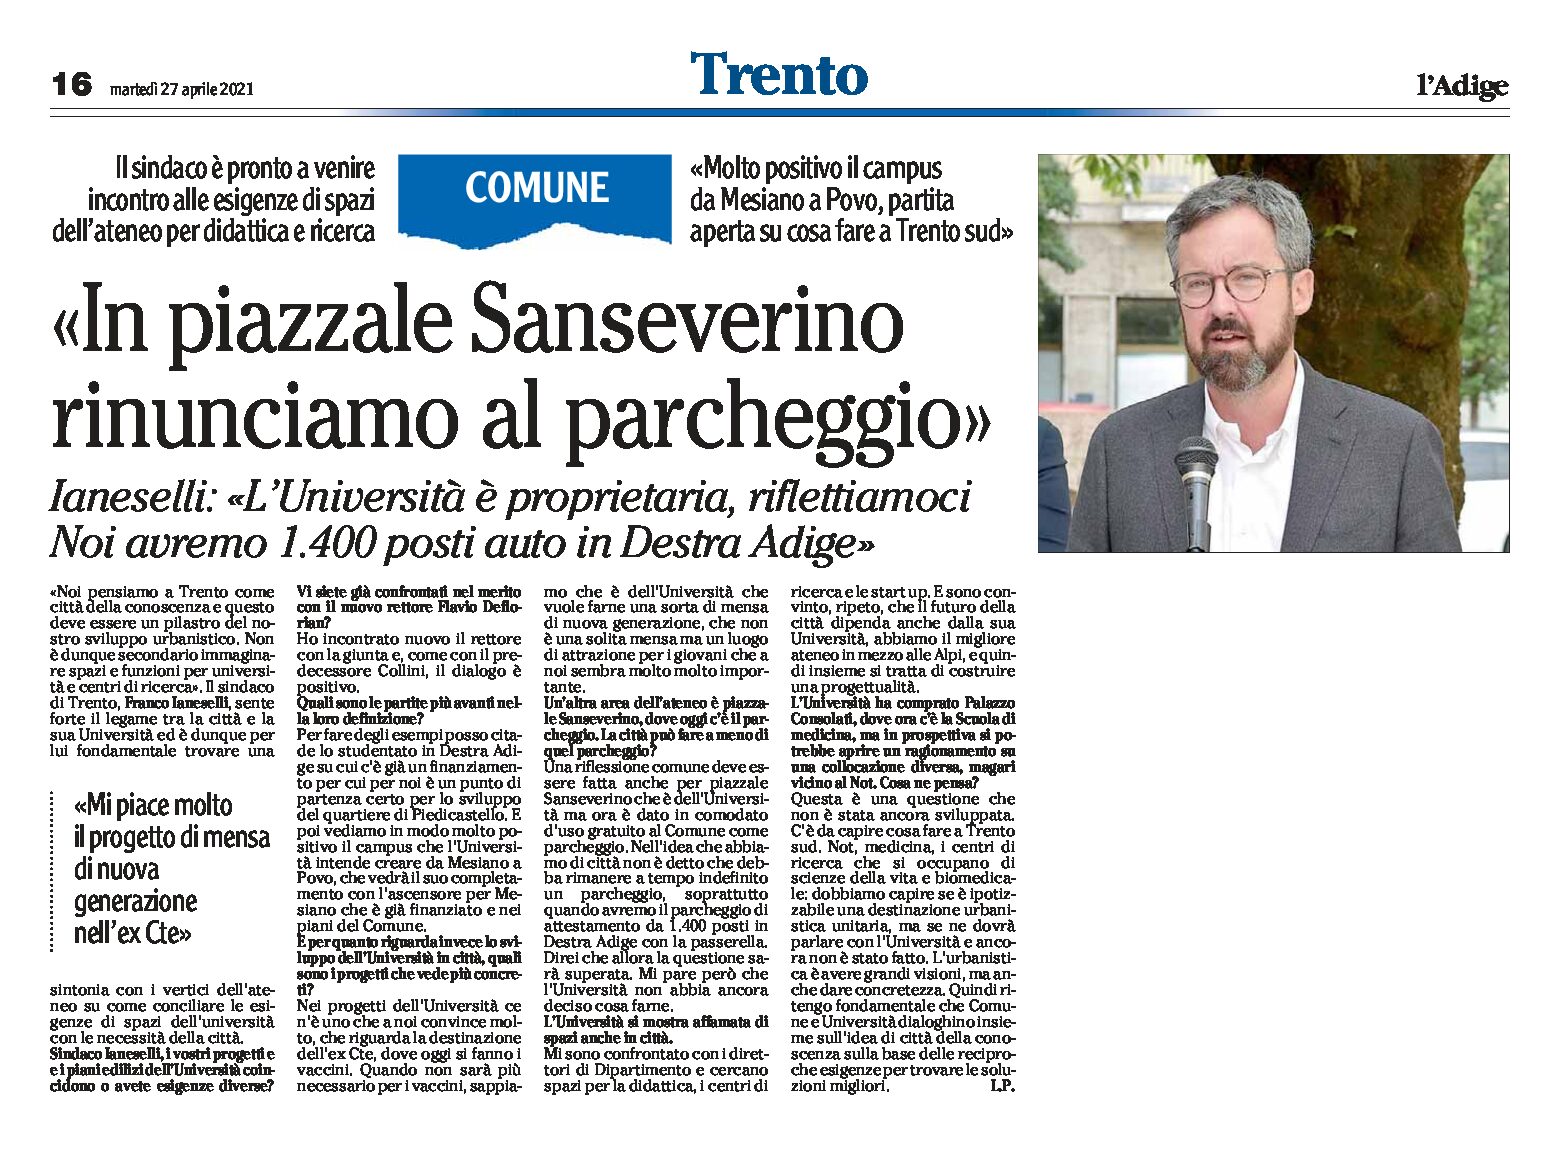 Trento: “in piazzale Sanseverino rinunciamo al parcheggio” intervista a Ianeselli